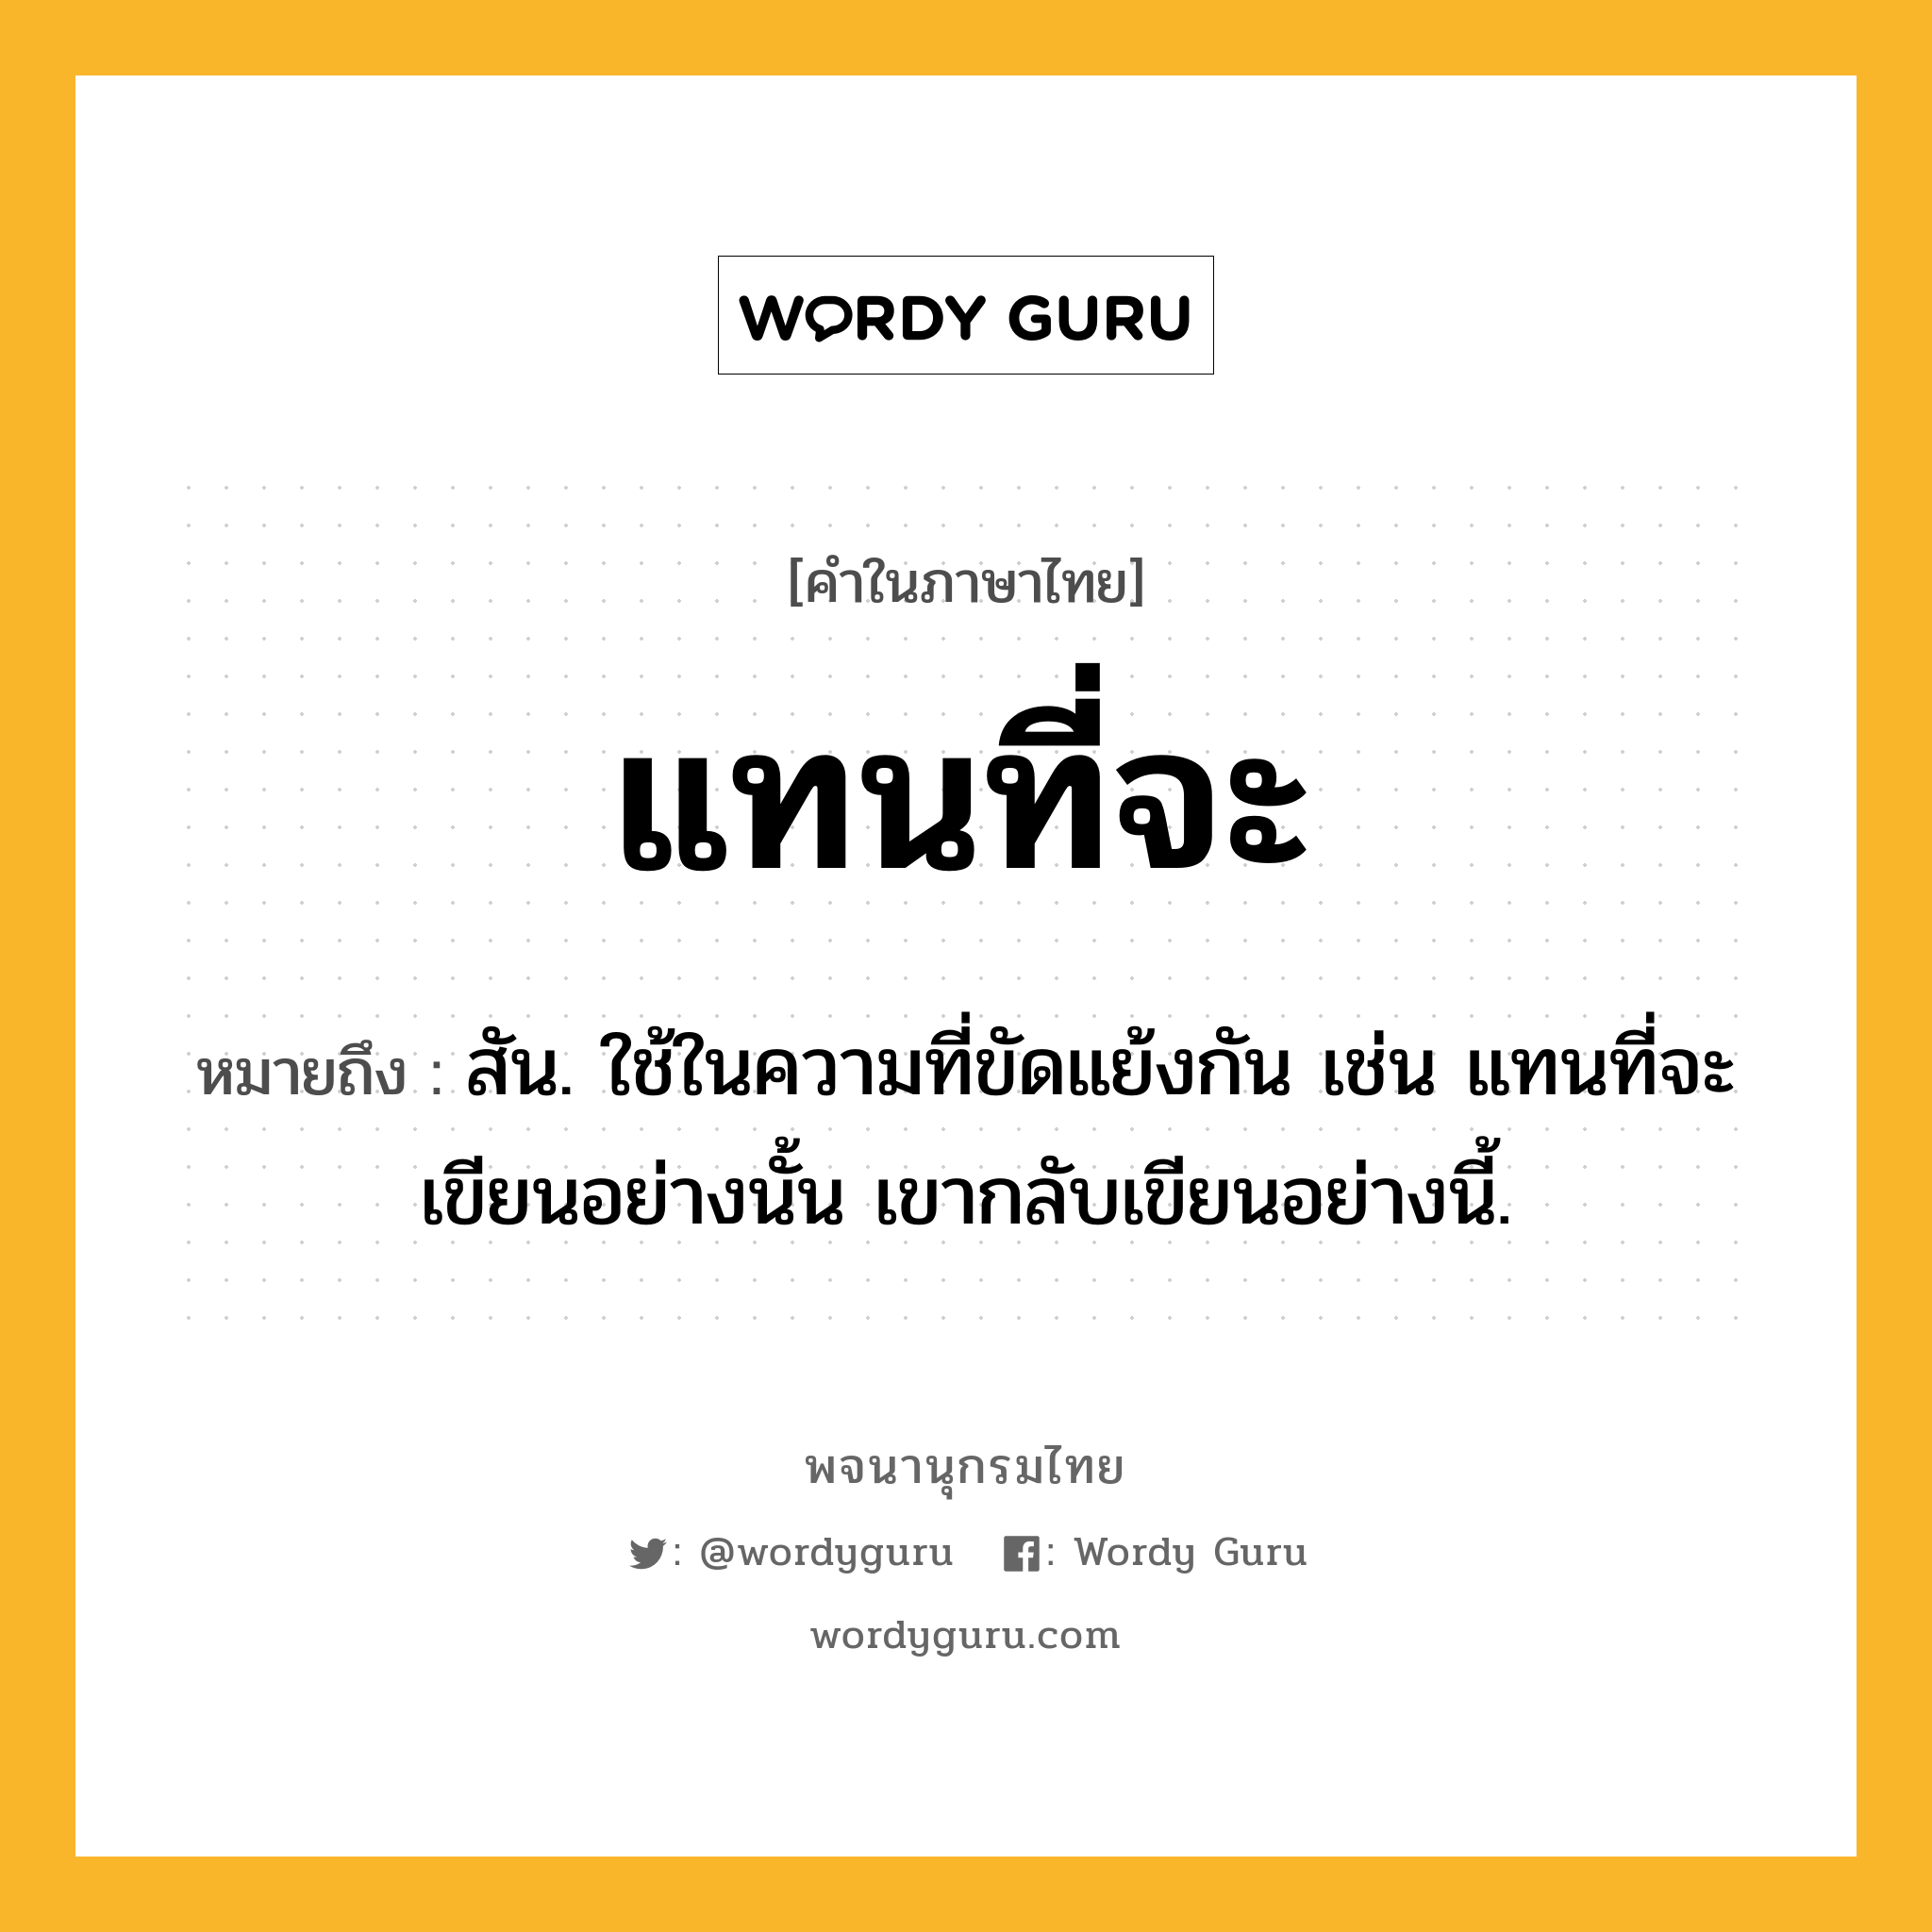 แทนที่จะ หมายถึงอะไร?, คำในภาษาไทย แทนที่จะ หมายถึง สัน. ใช้ในความที่ขัดแย้งกัน เช่น แทนที่จะเขียนอย่างนั้น เขากลับเขียนอย่างนี้.